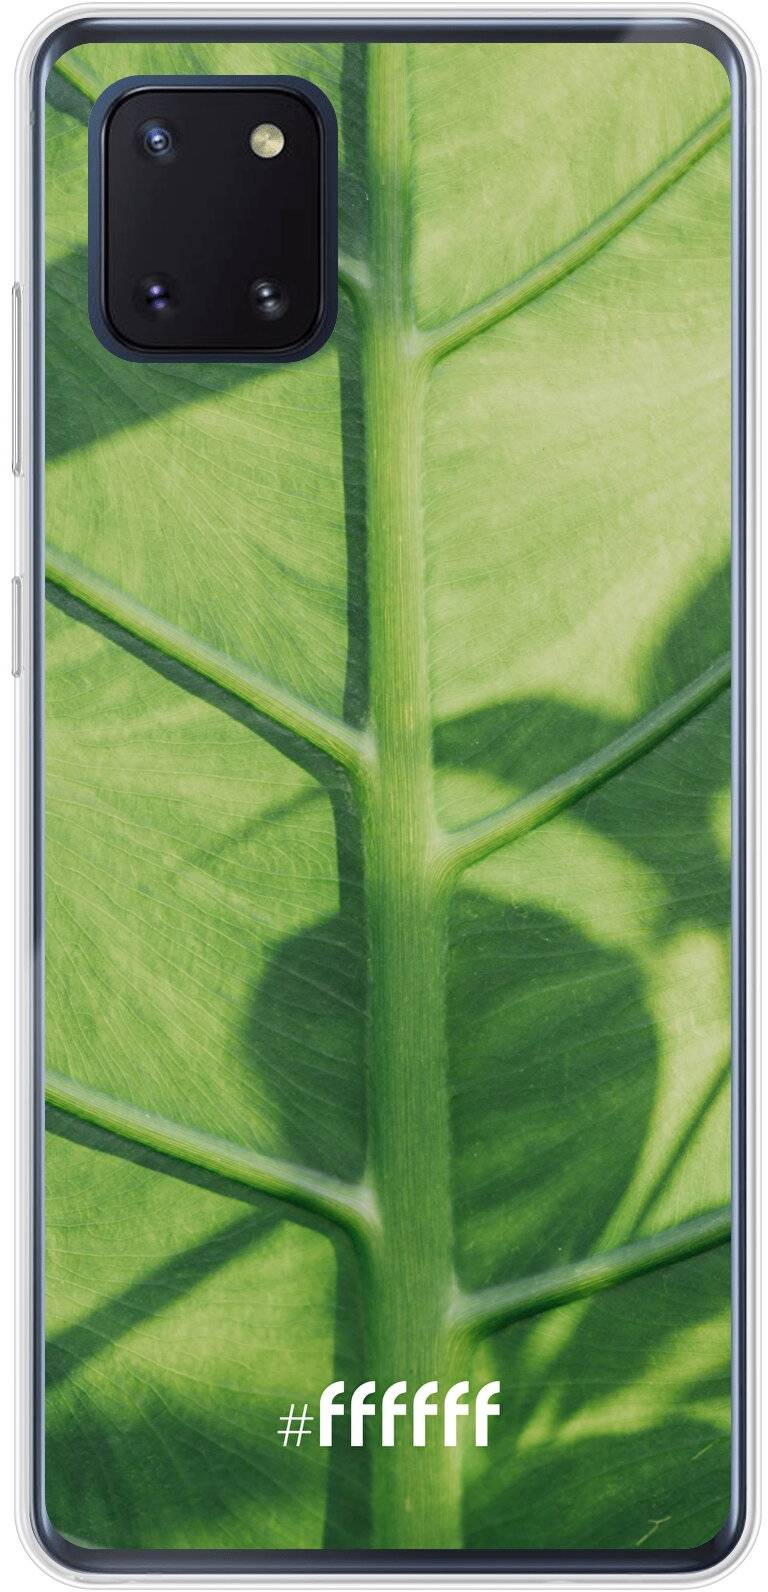 Leaves Macro Galaxy Note 10 Lite